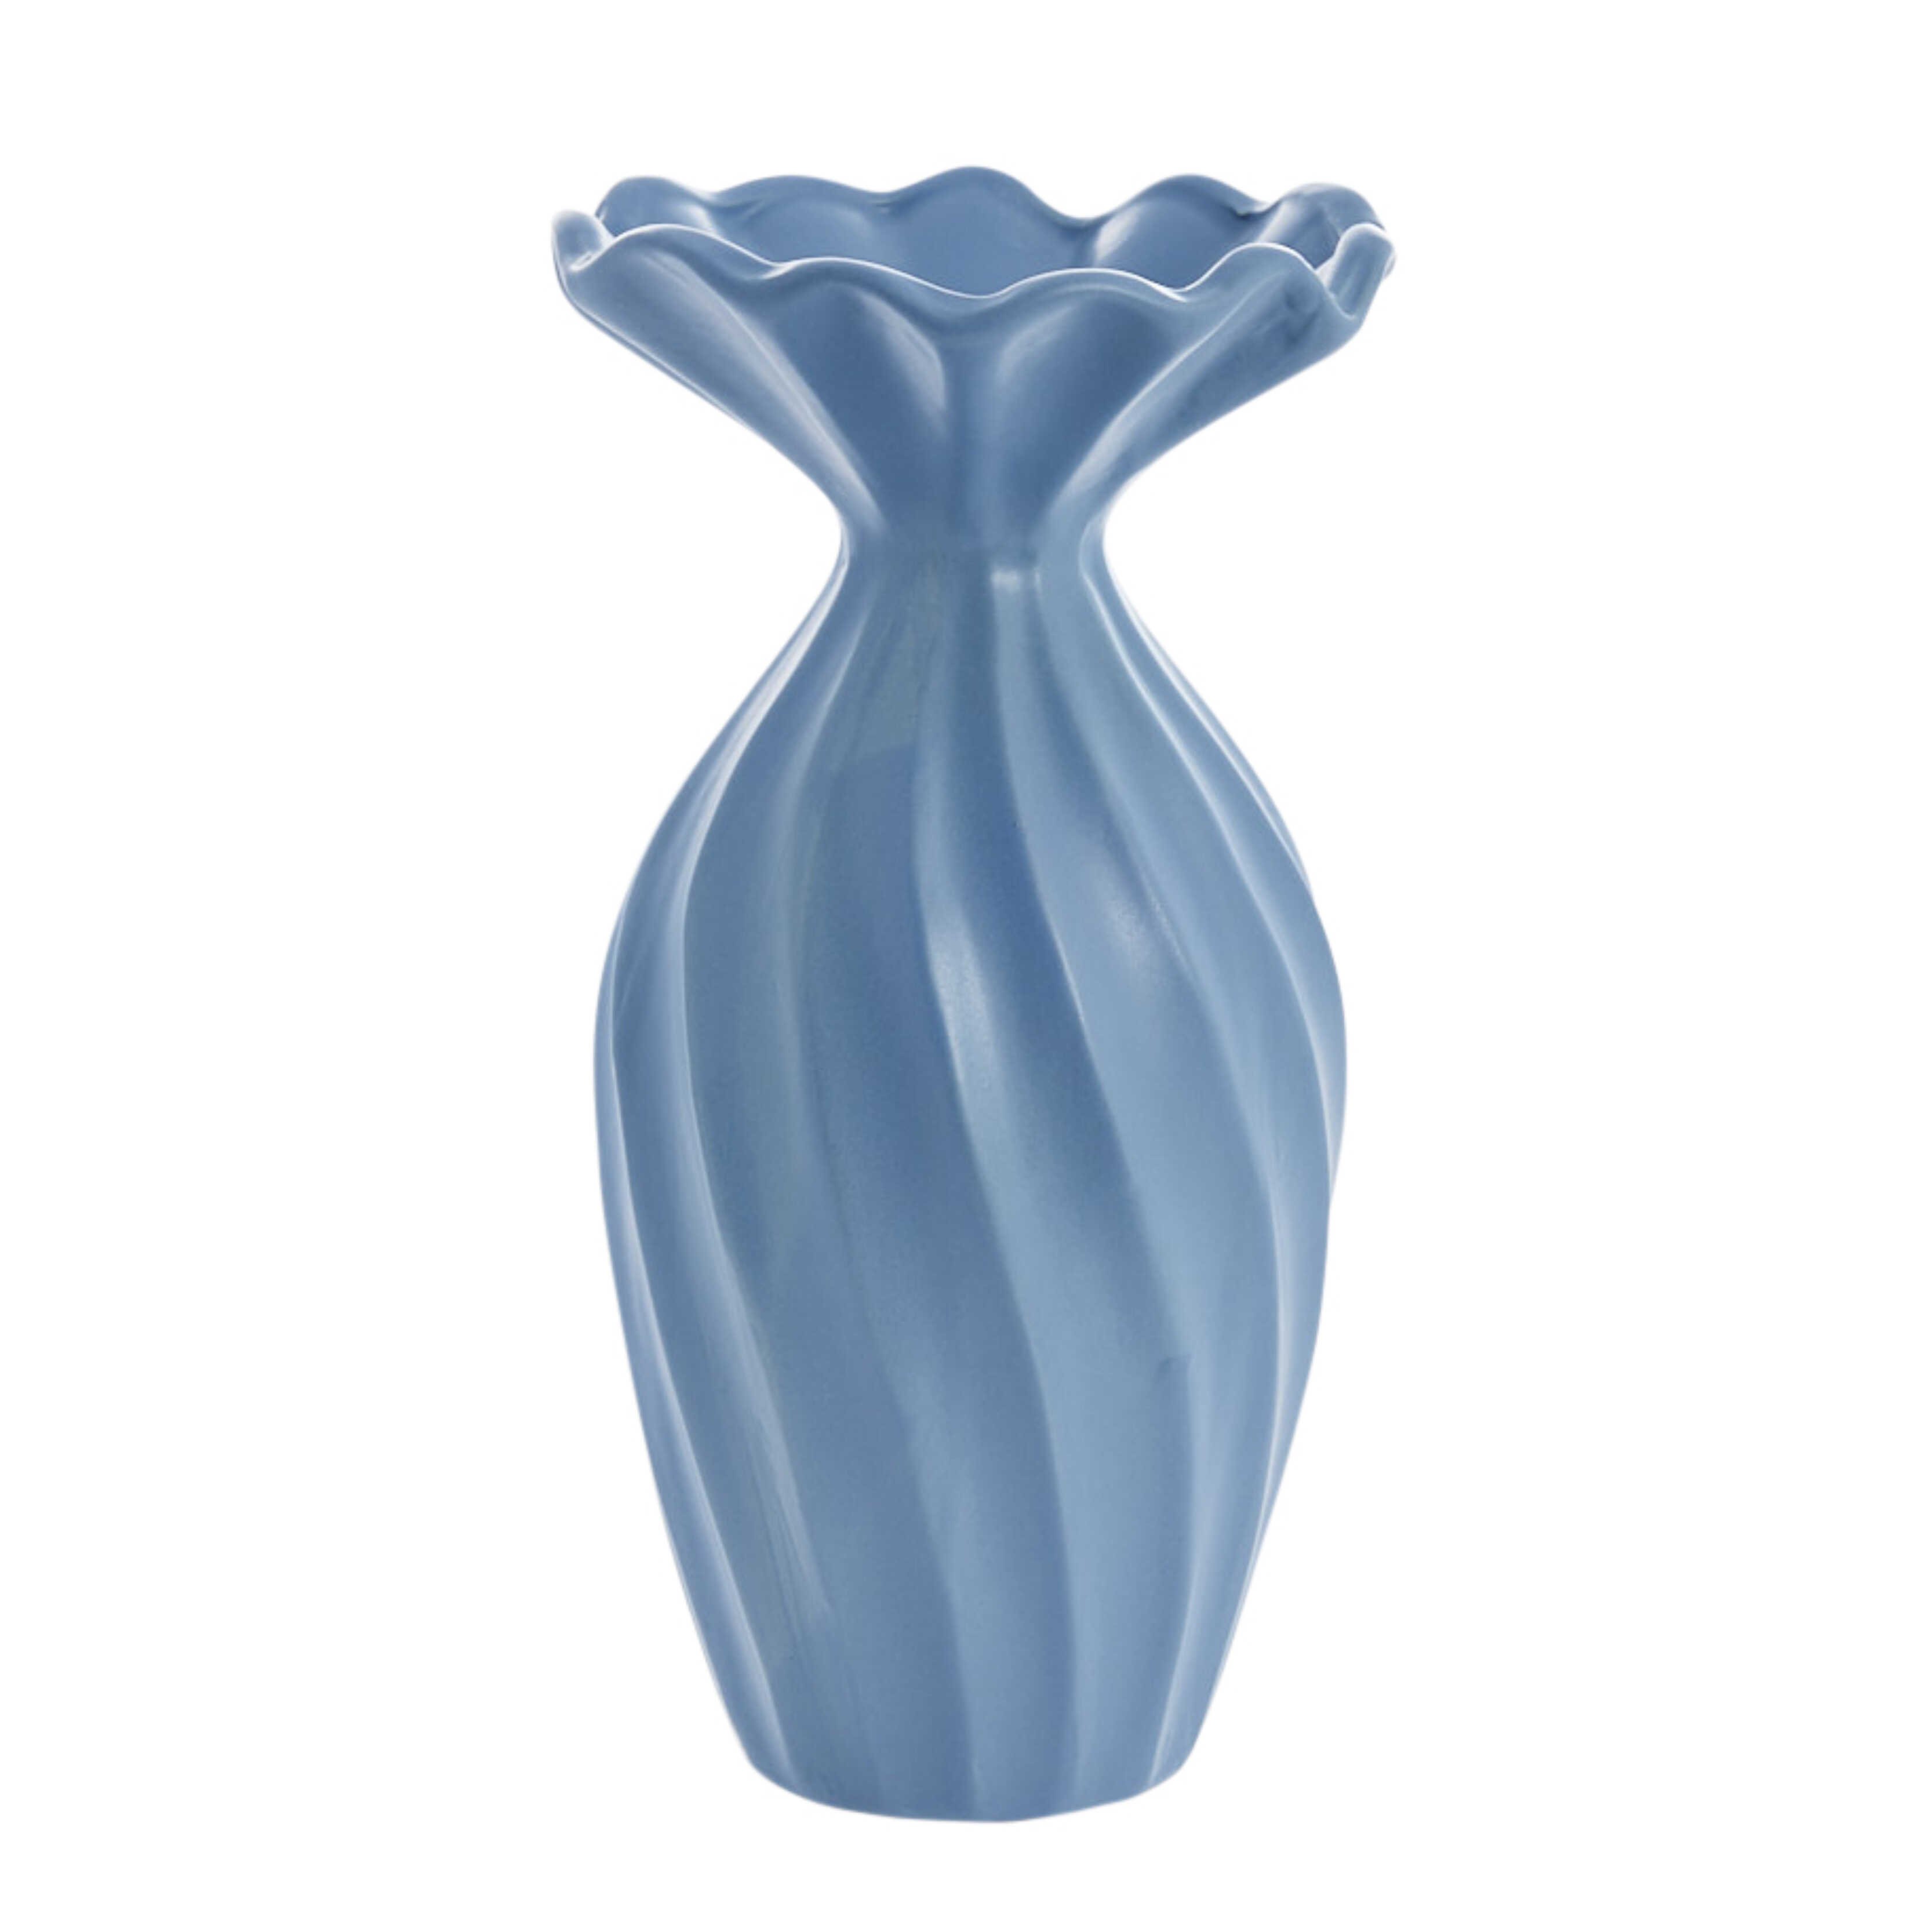 Bl Susille keramik vase fra Lene Bjerre - H 25 cm.